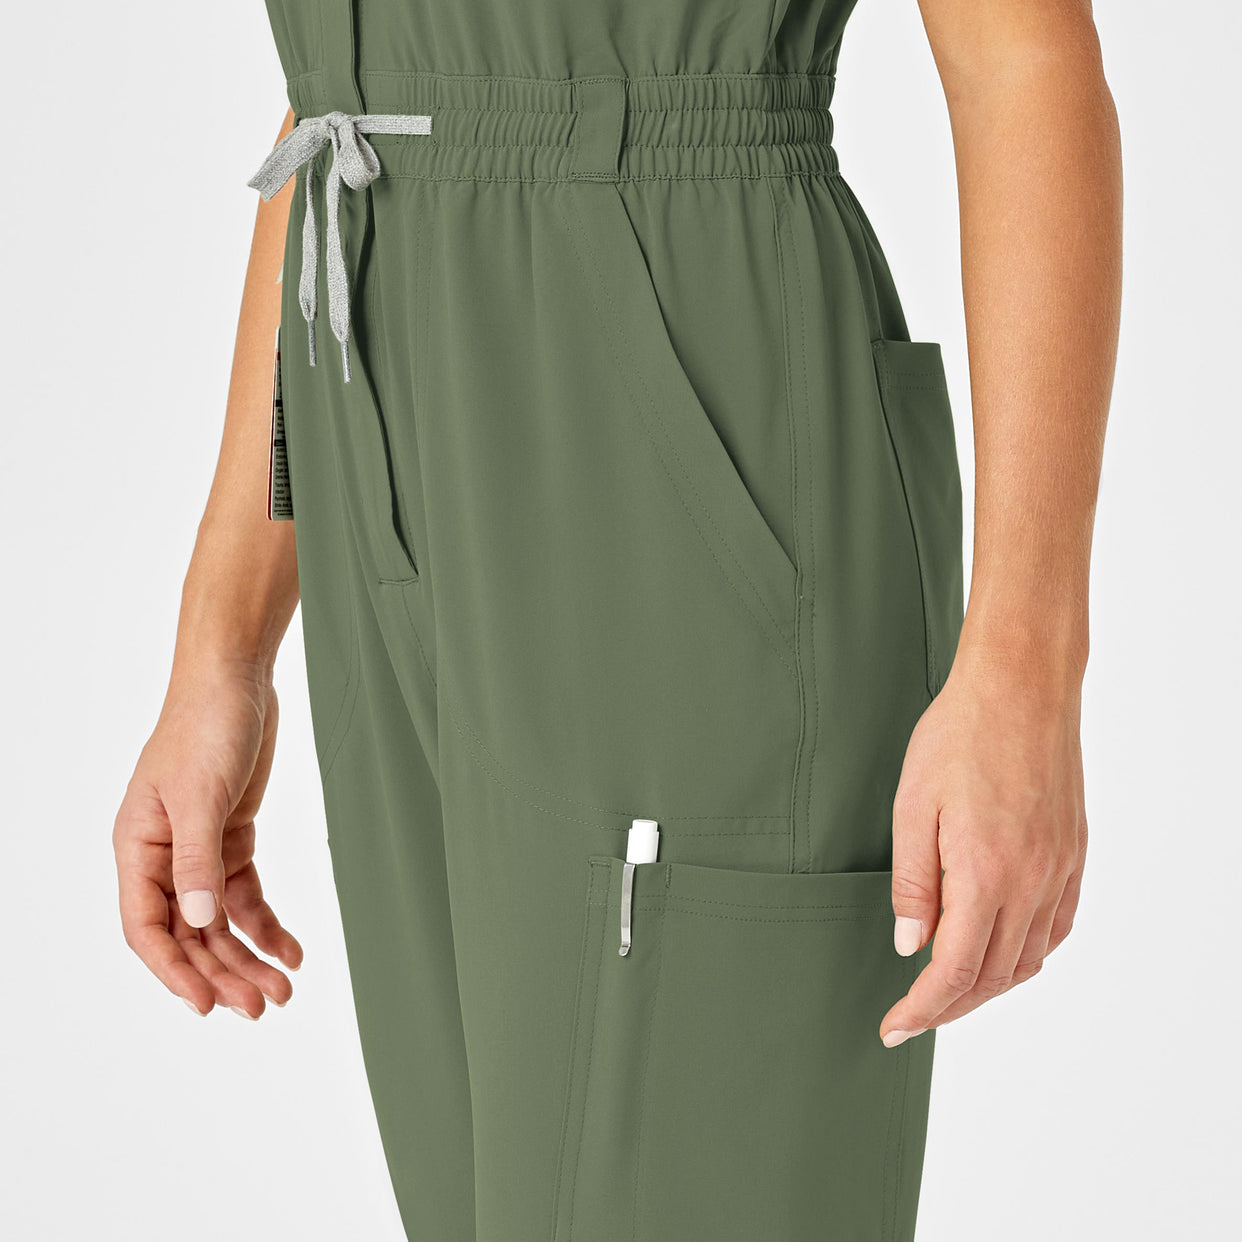 RENEW Women's Zip Front Jumpsuit Olive hemline detail